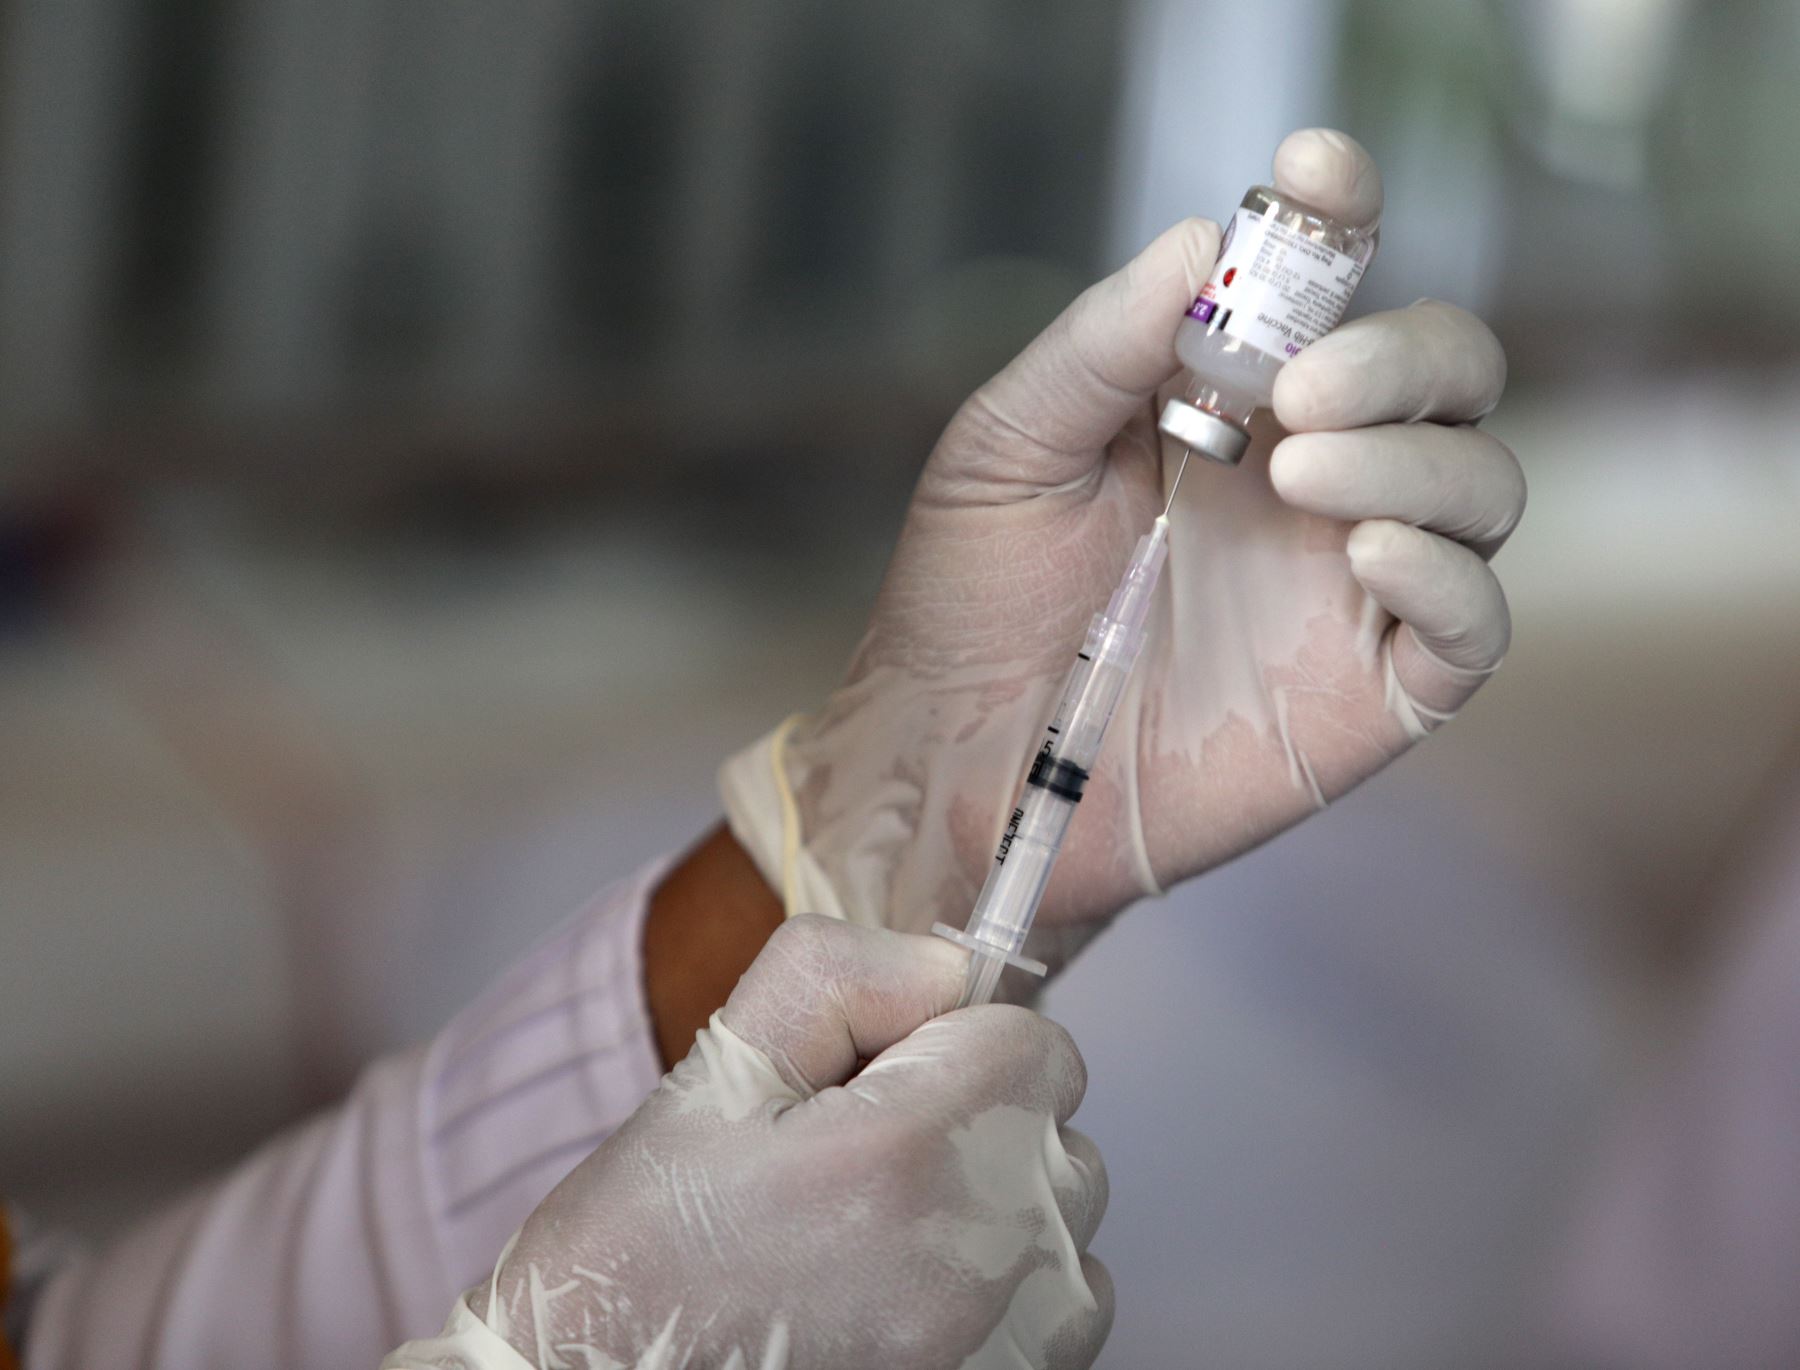 La biotecnológica Moderna aseguró este miércoles que su vacuna contra la covid-19 generó una respuesta inmune prometedora en pacientes de edad avanzada. Foto: EFE